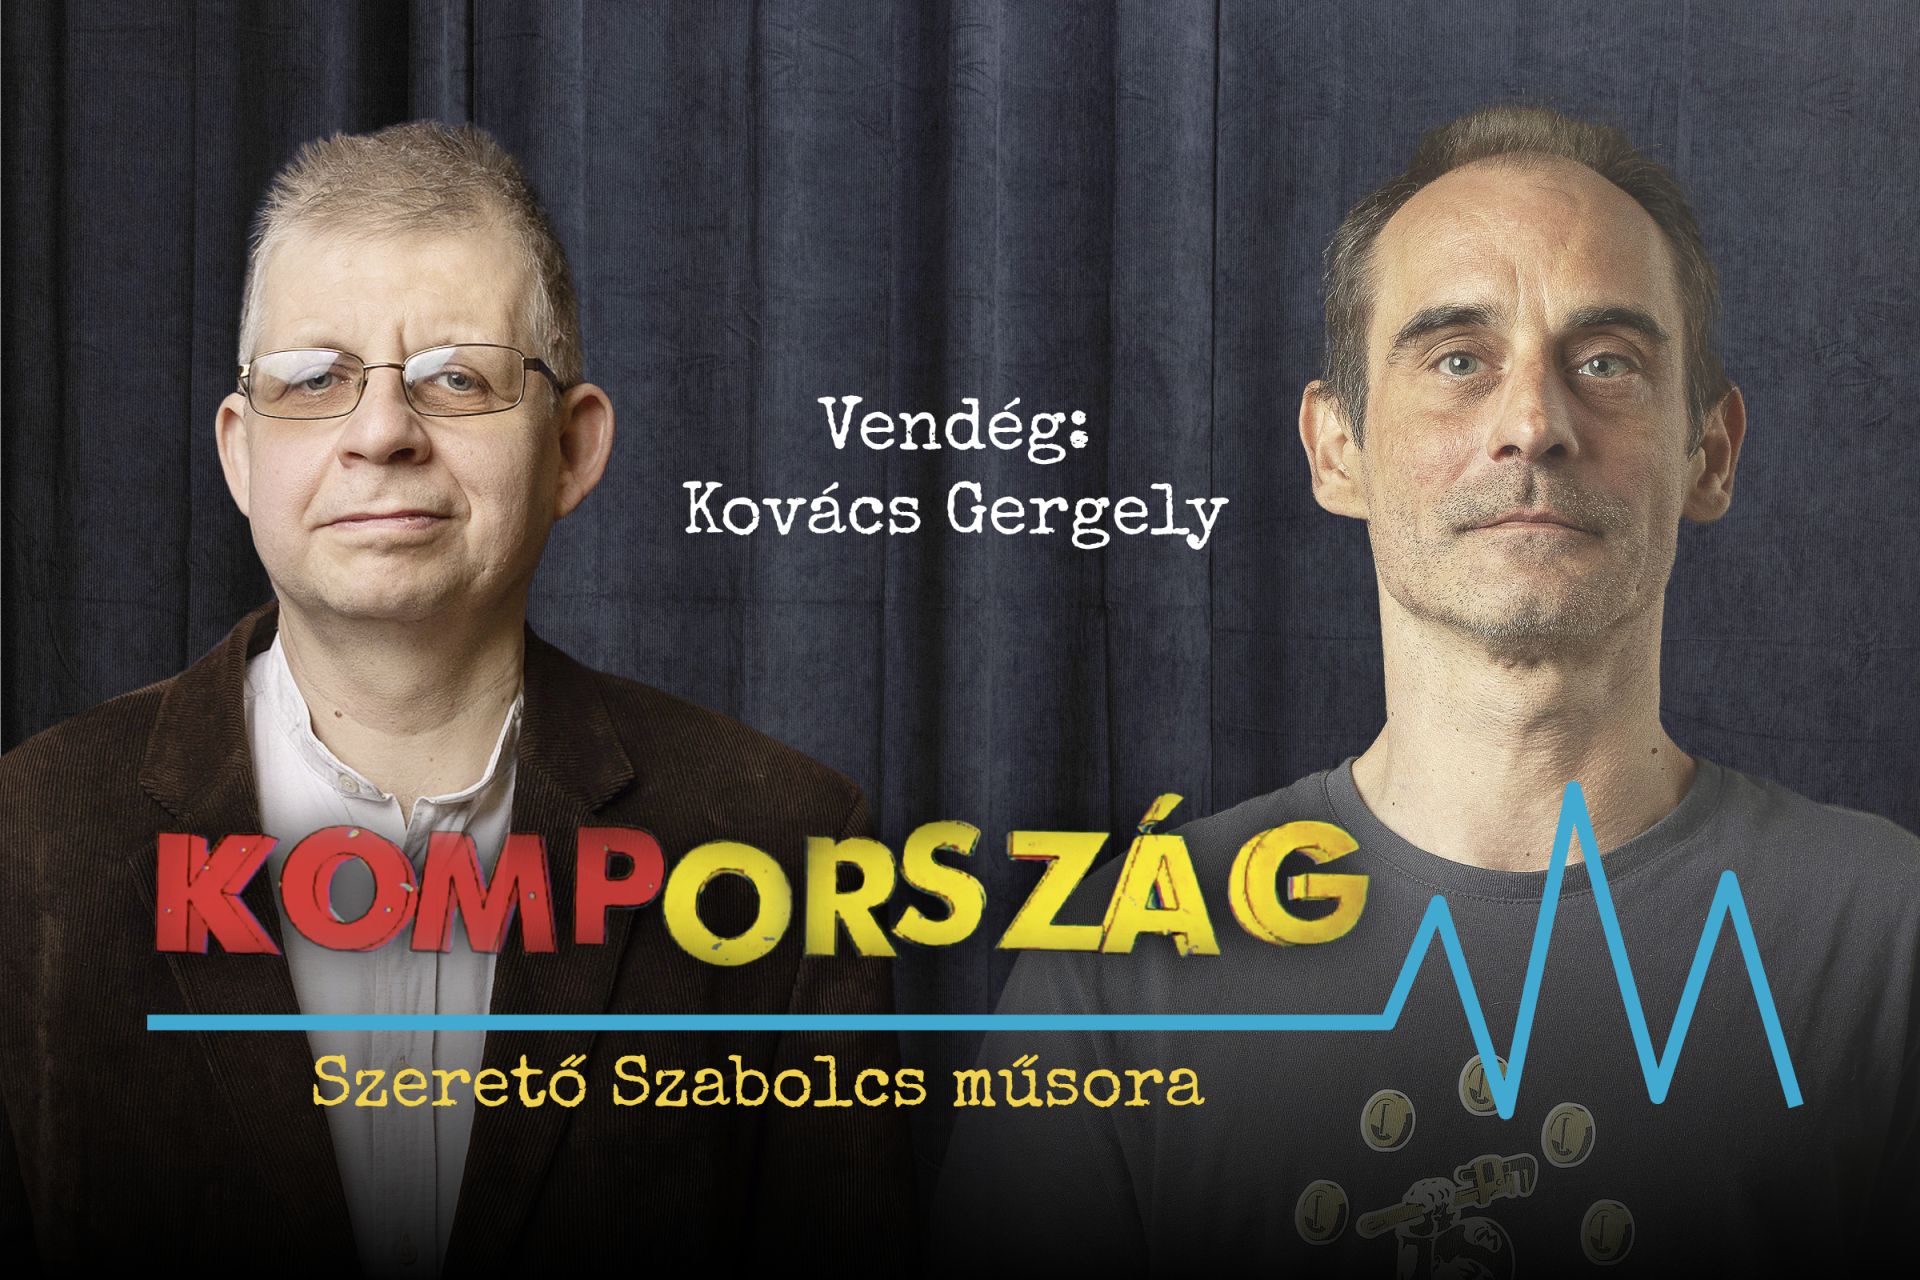 Kovács Gergely: Gondolkodtunk azon, hogy Magyar Pétert jelöljük főpolgármesternek – Kompország